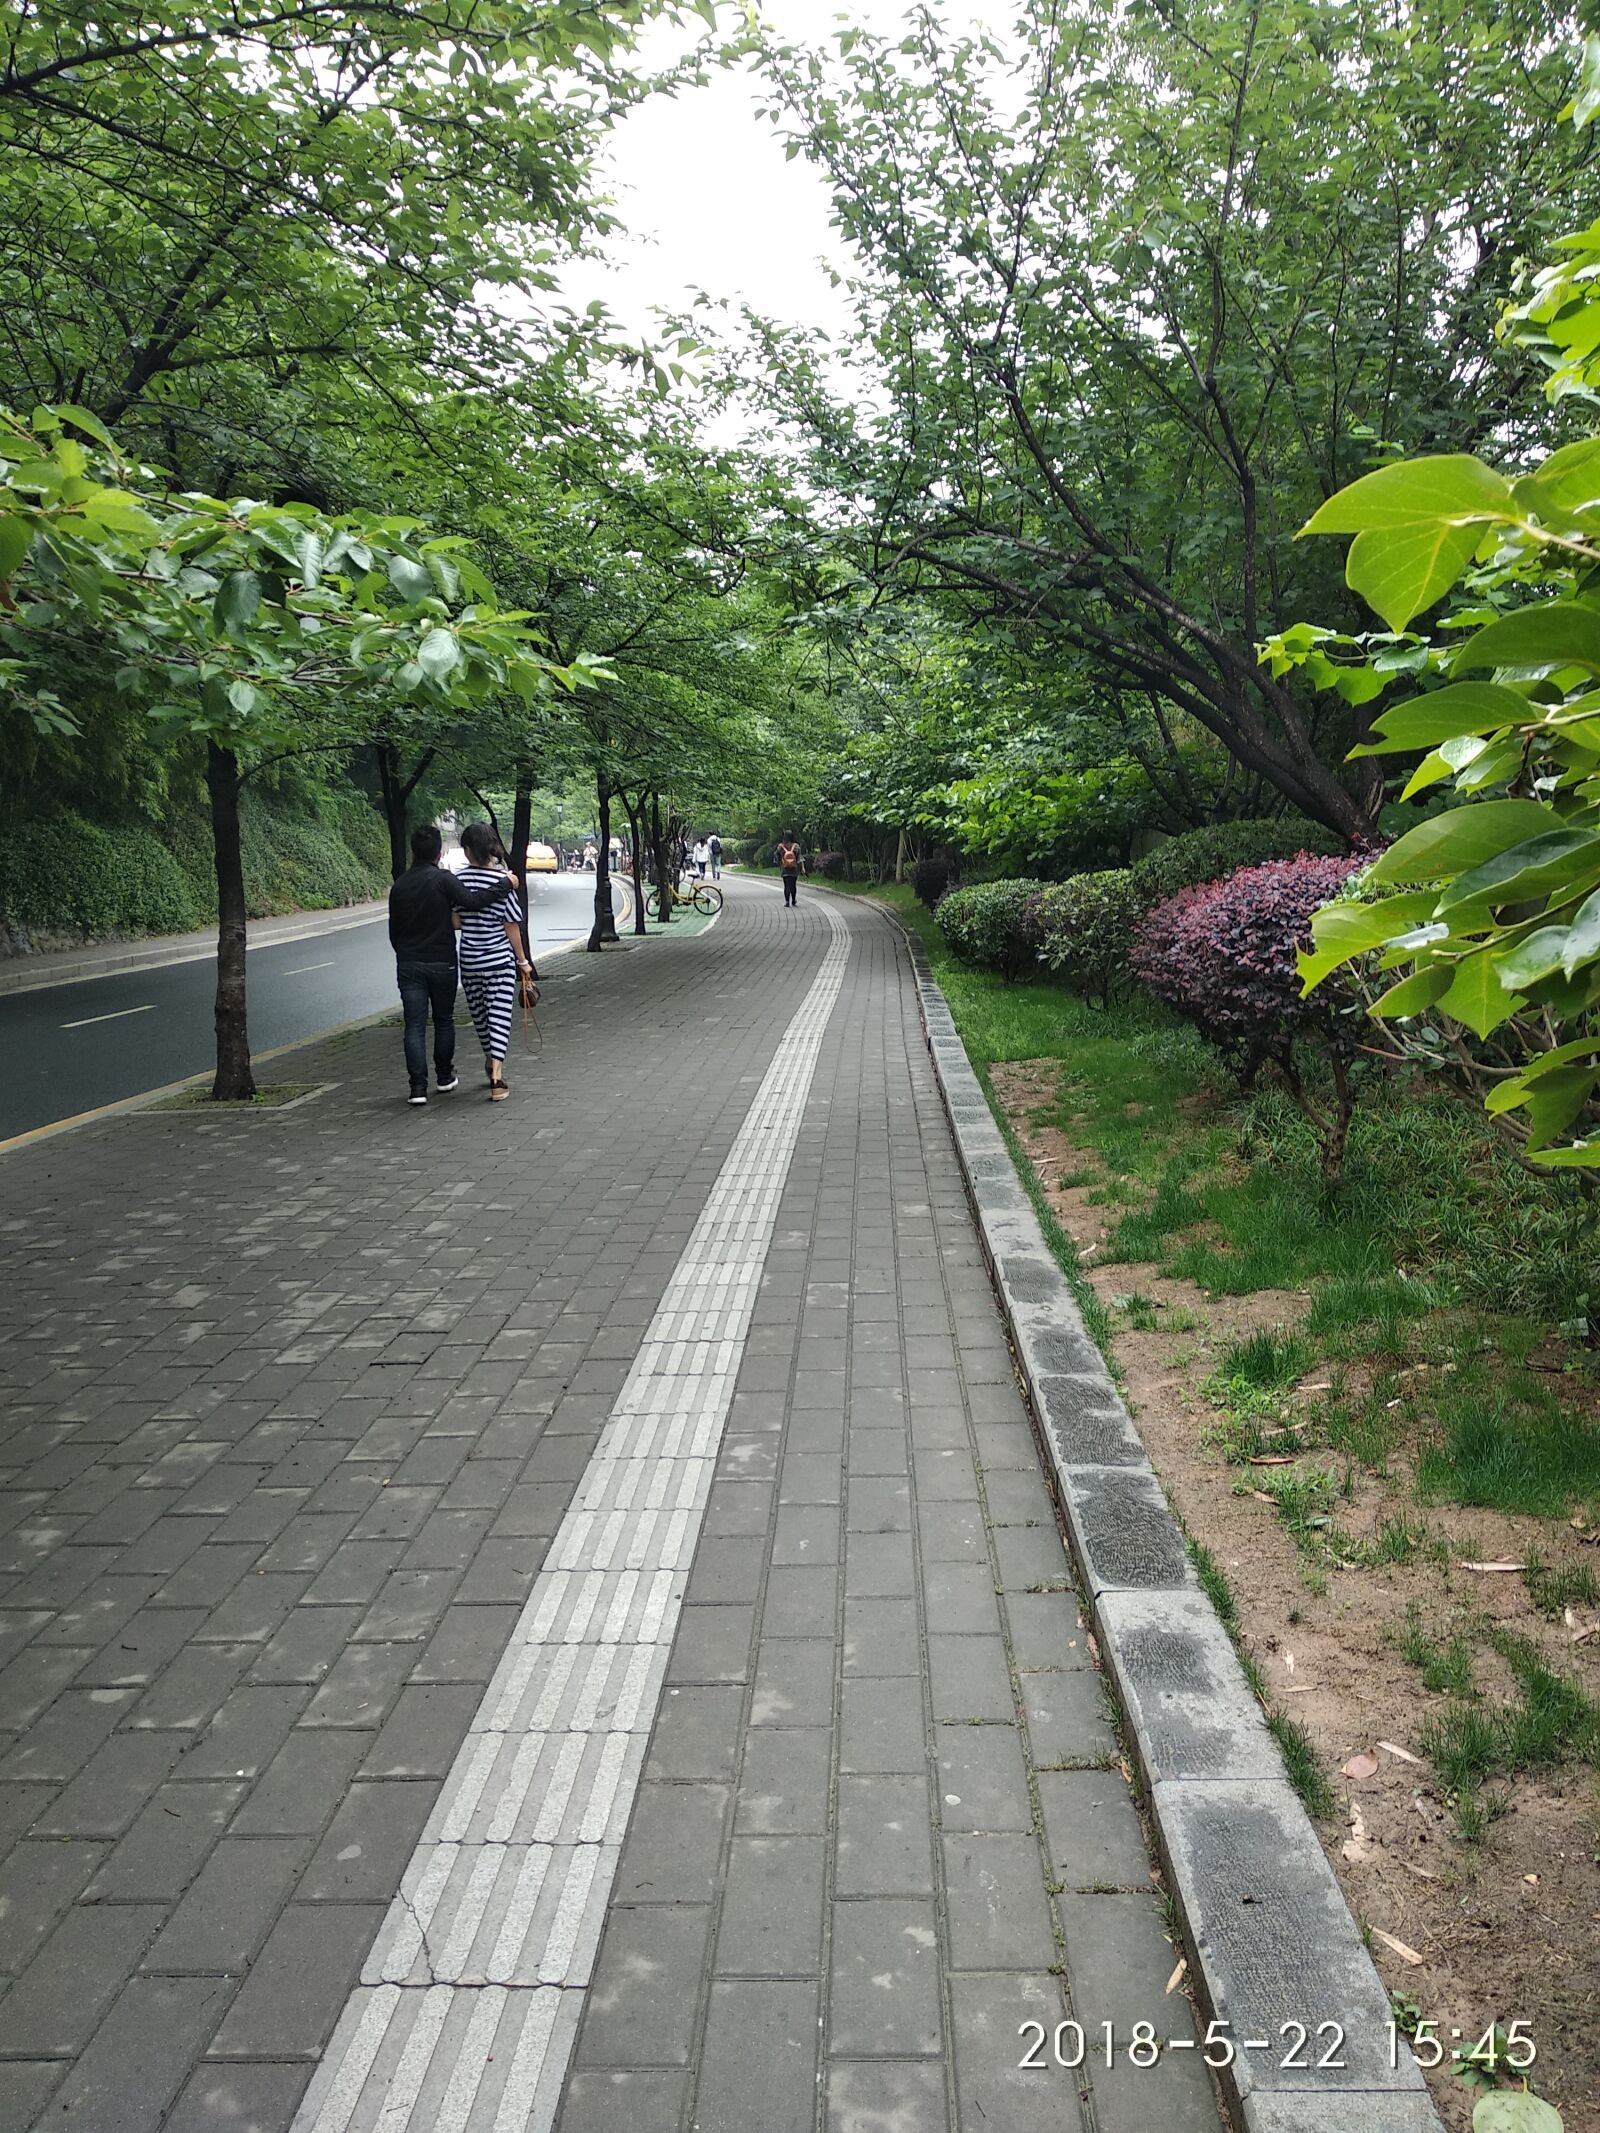 Xiaomi Redmi 5 Plus sample photo. Trees, trail, walking photography